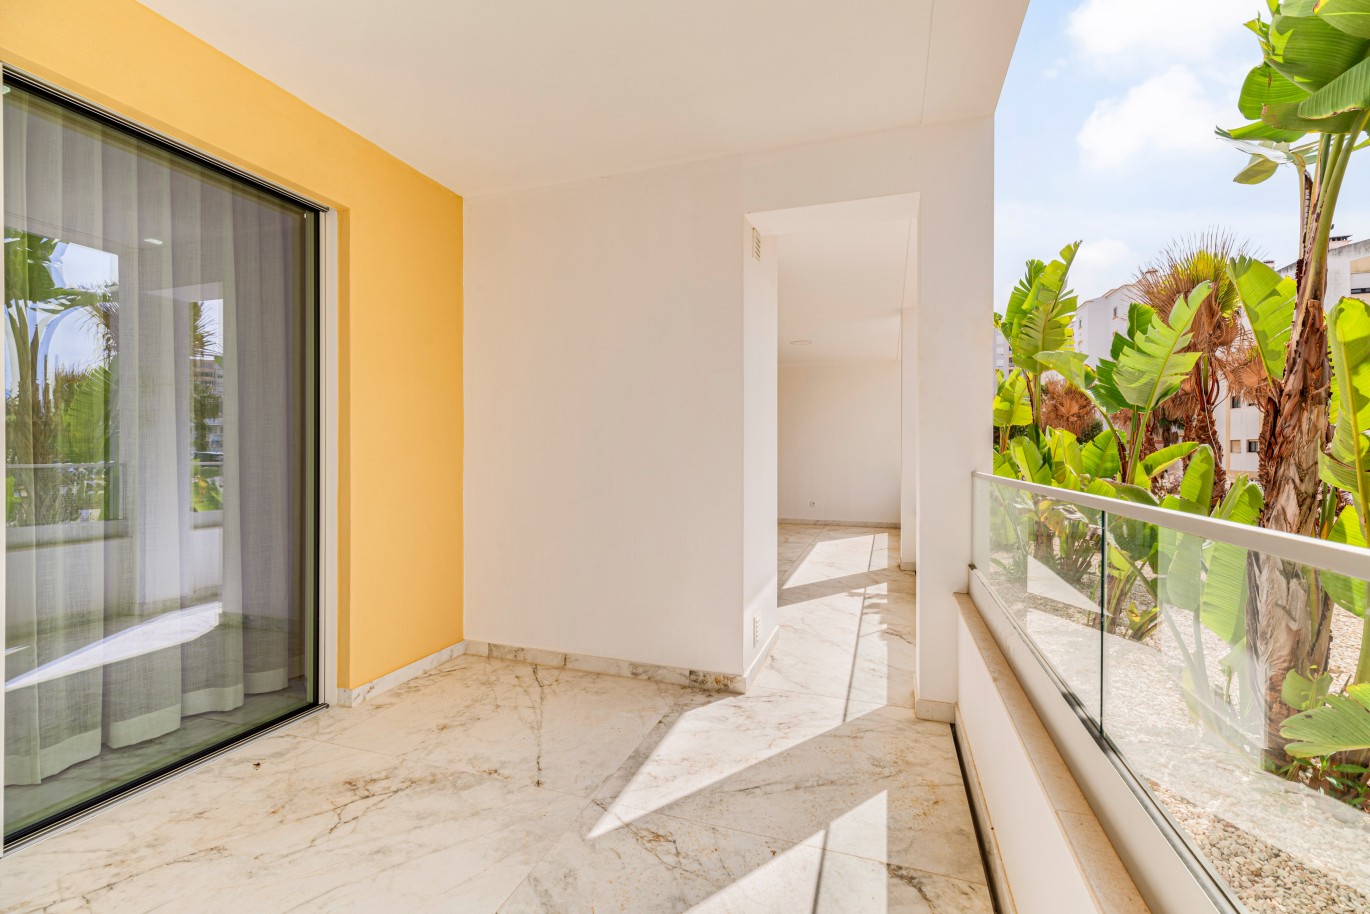 Apartamento, com terraço, para venda, em Lagos, Algarve_238088